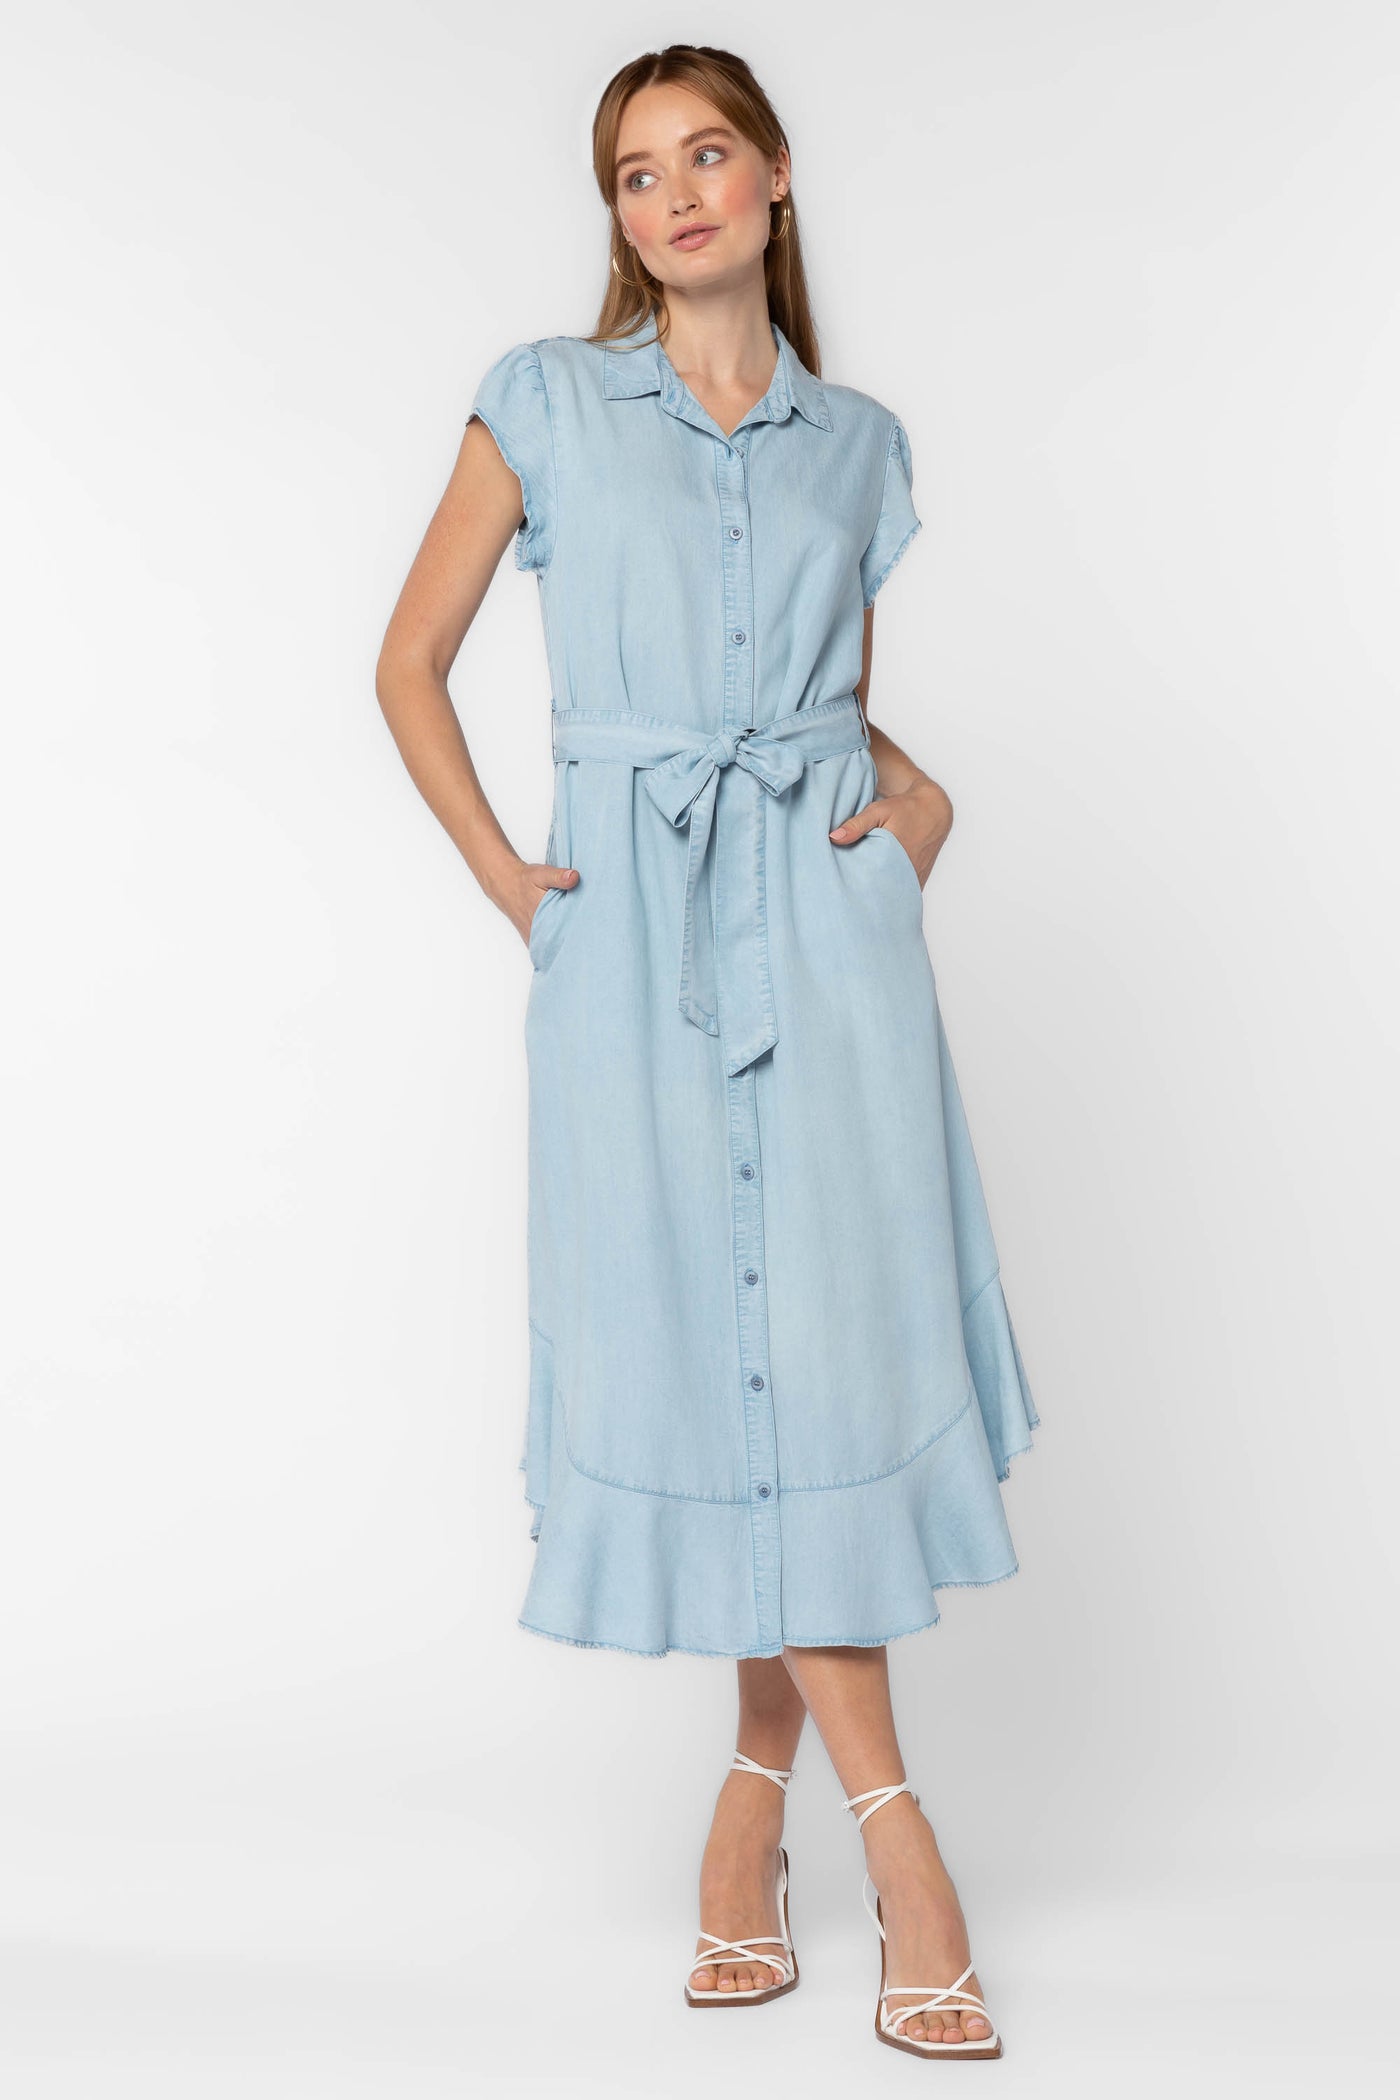 Rachel Blue Dress - Dresses - Velvet Heart Clothing